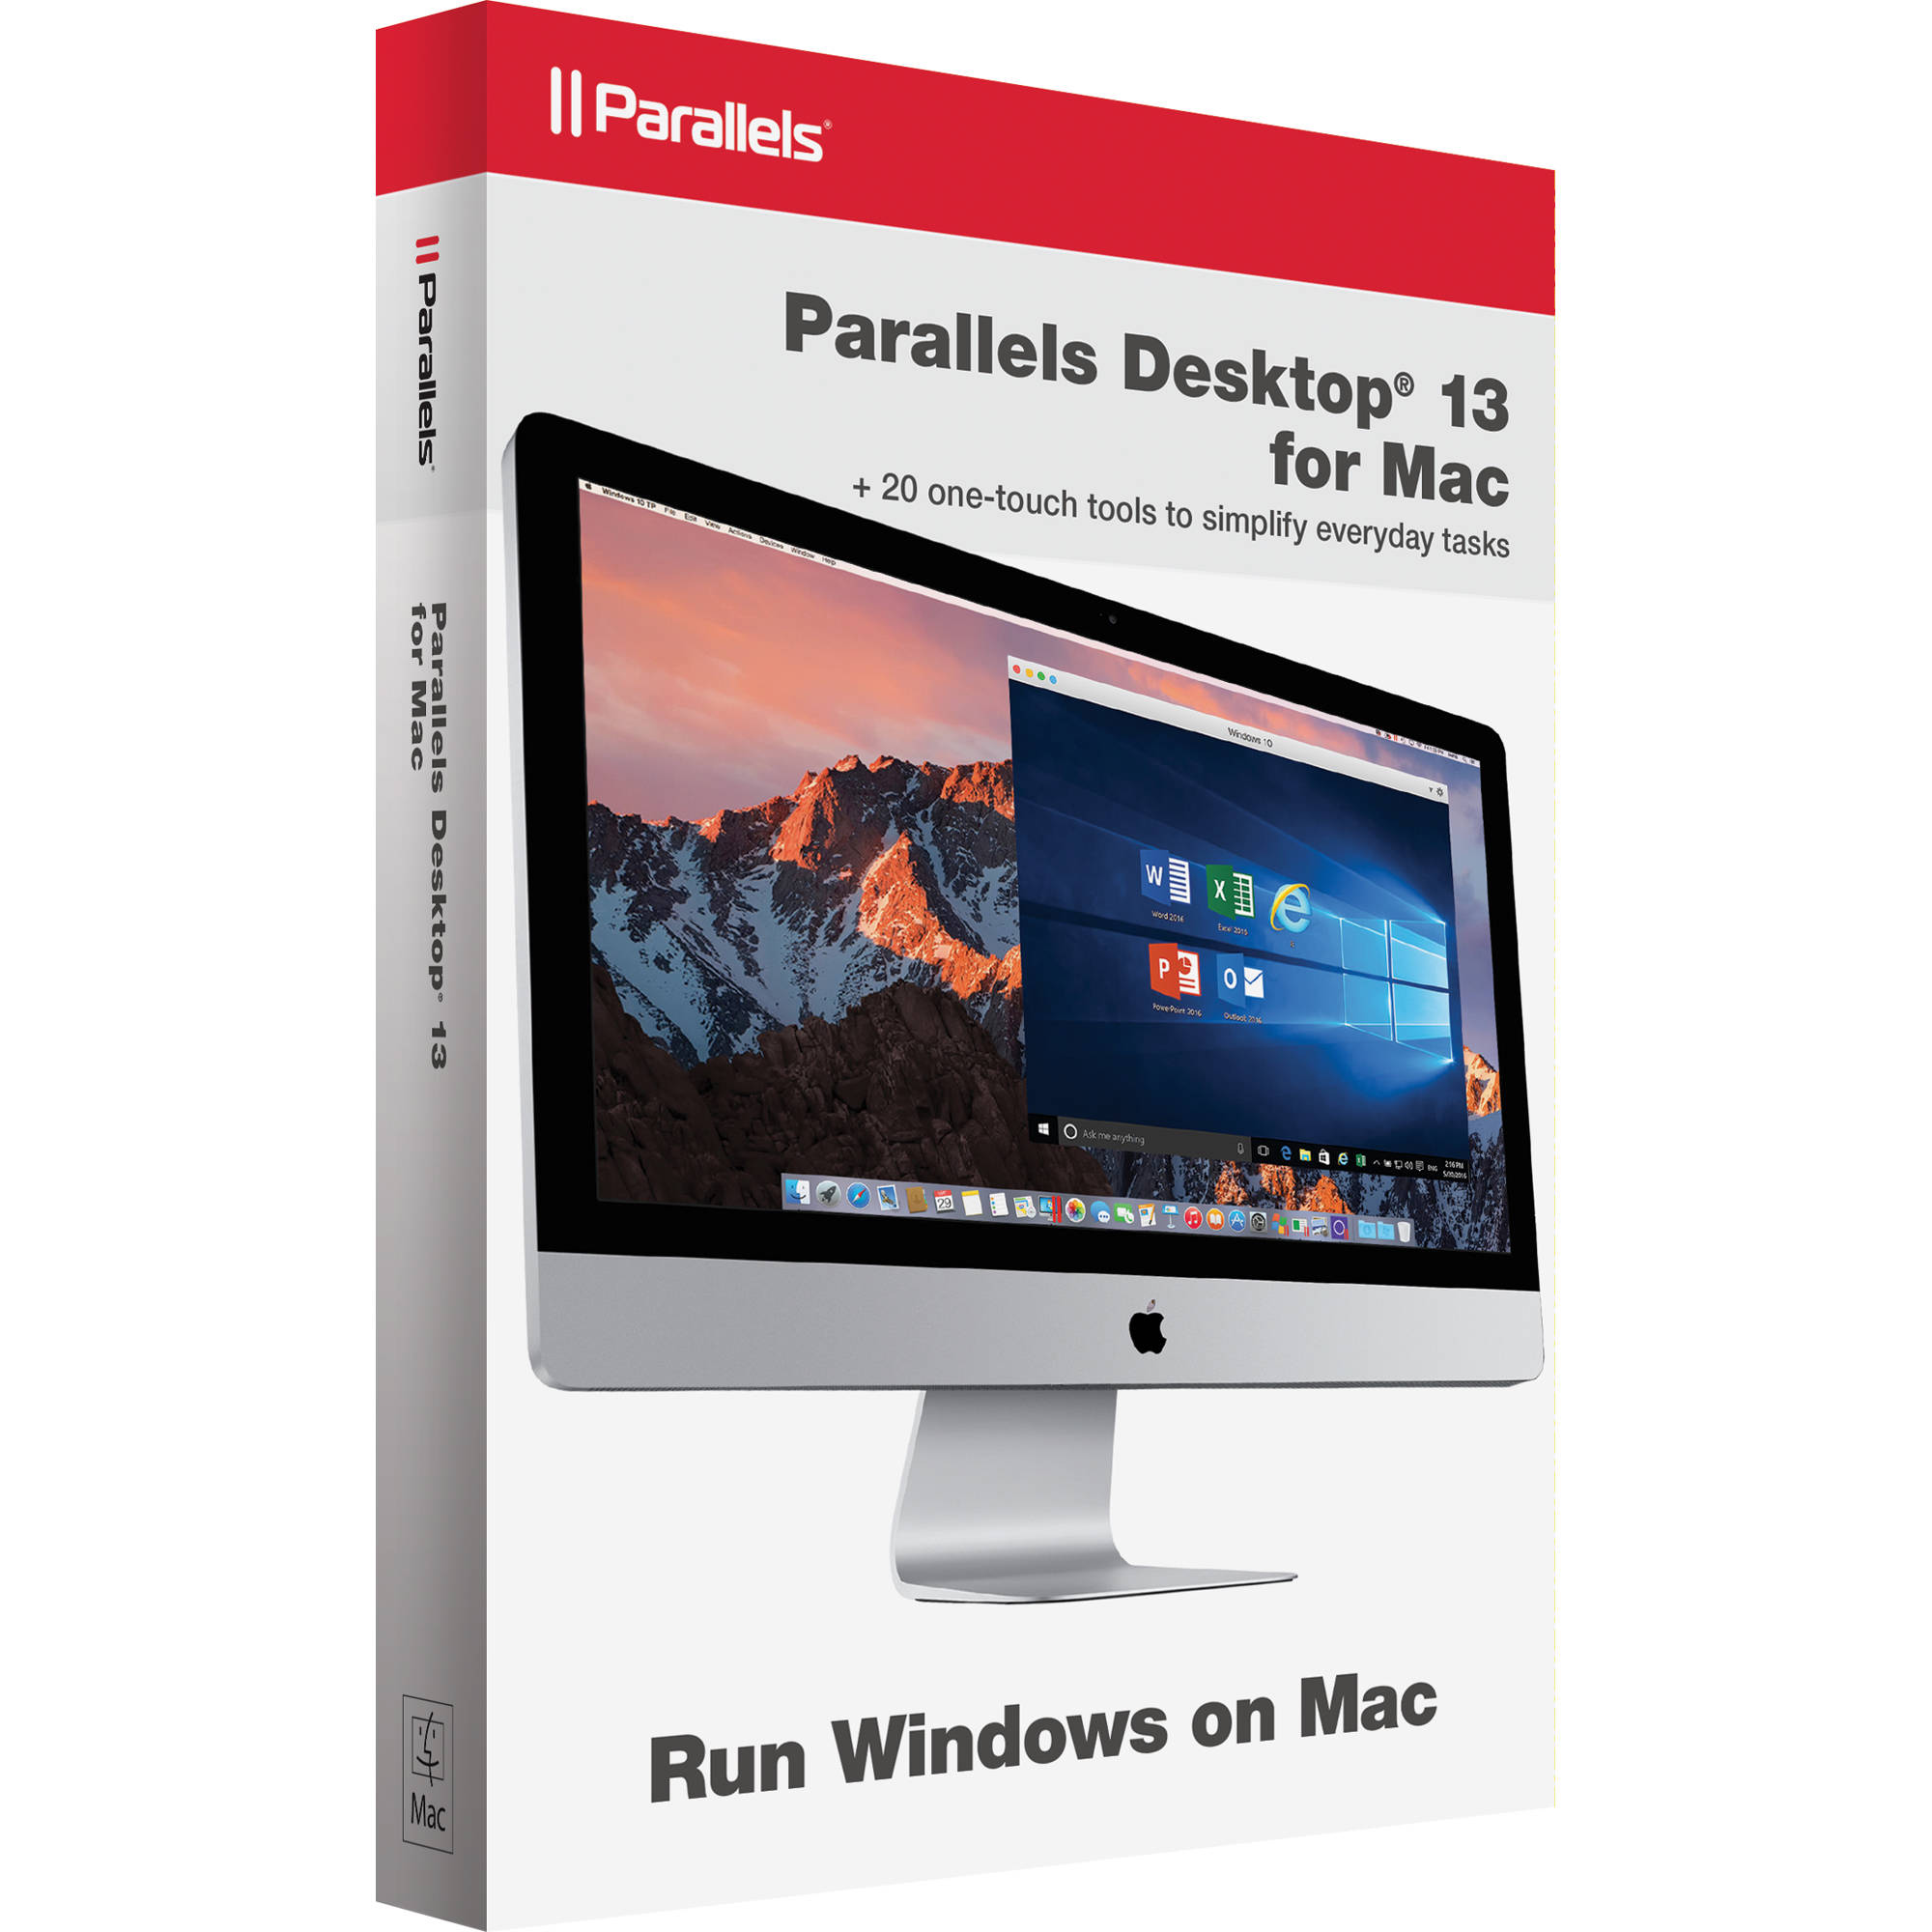 crack for parallel desktop 13